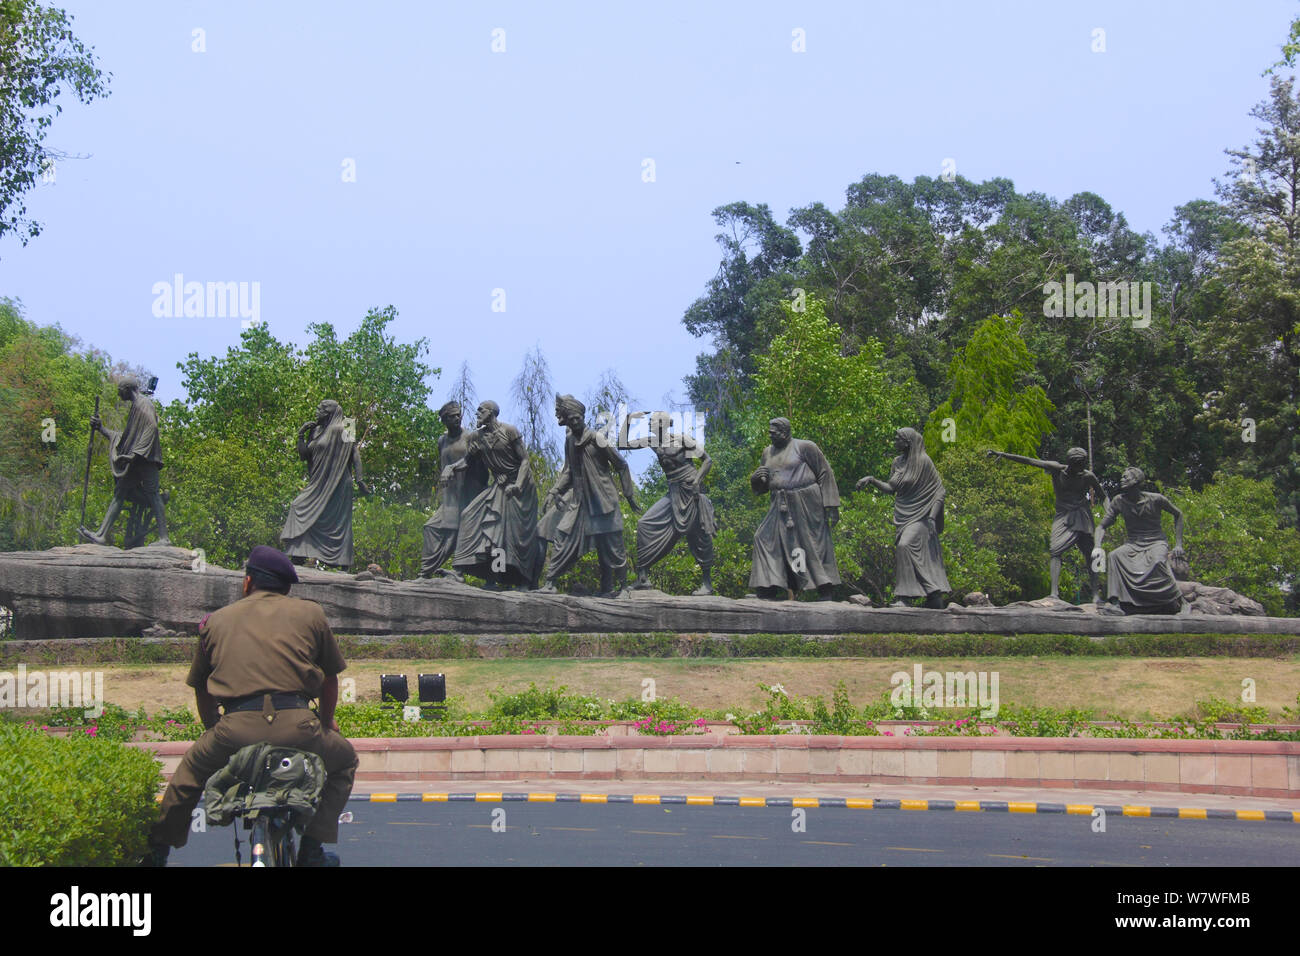 Statue of Dandi March, New Delhi, India Stock Photo